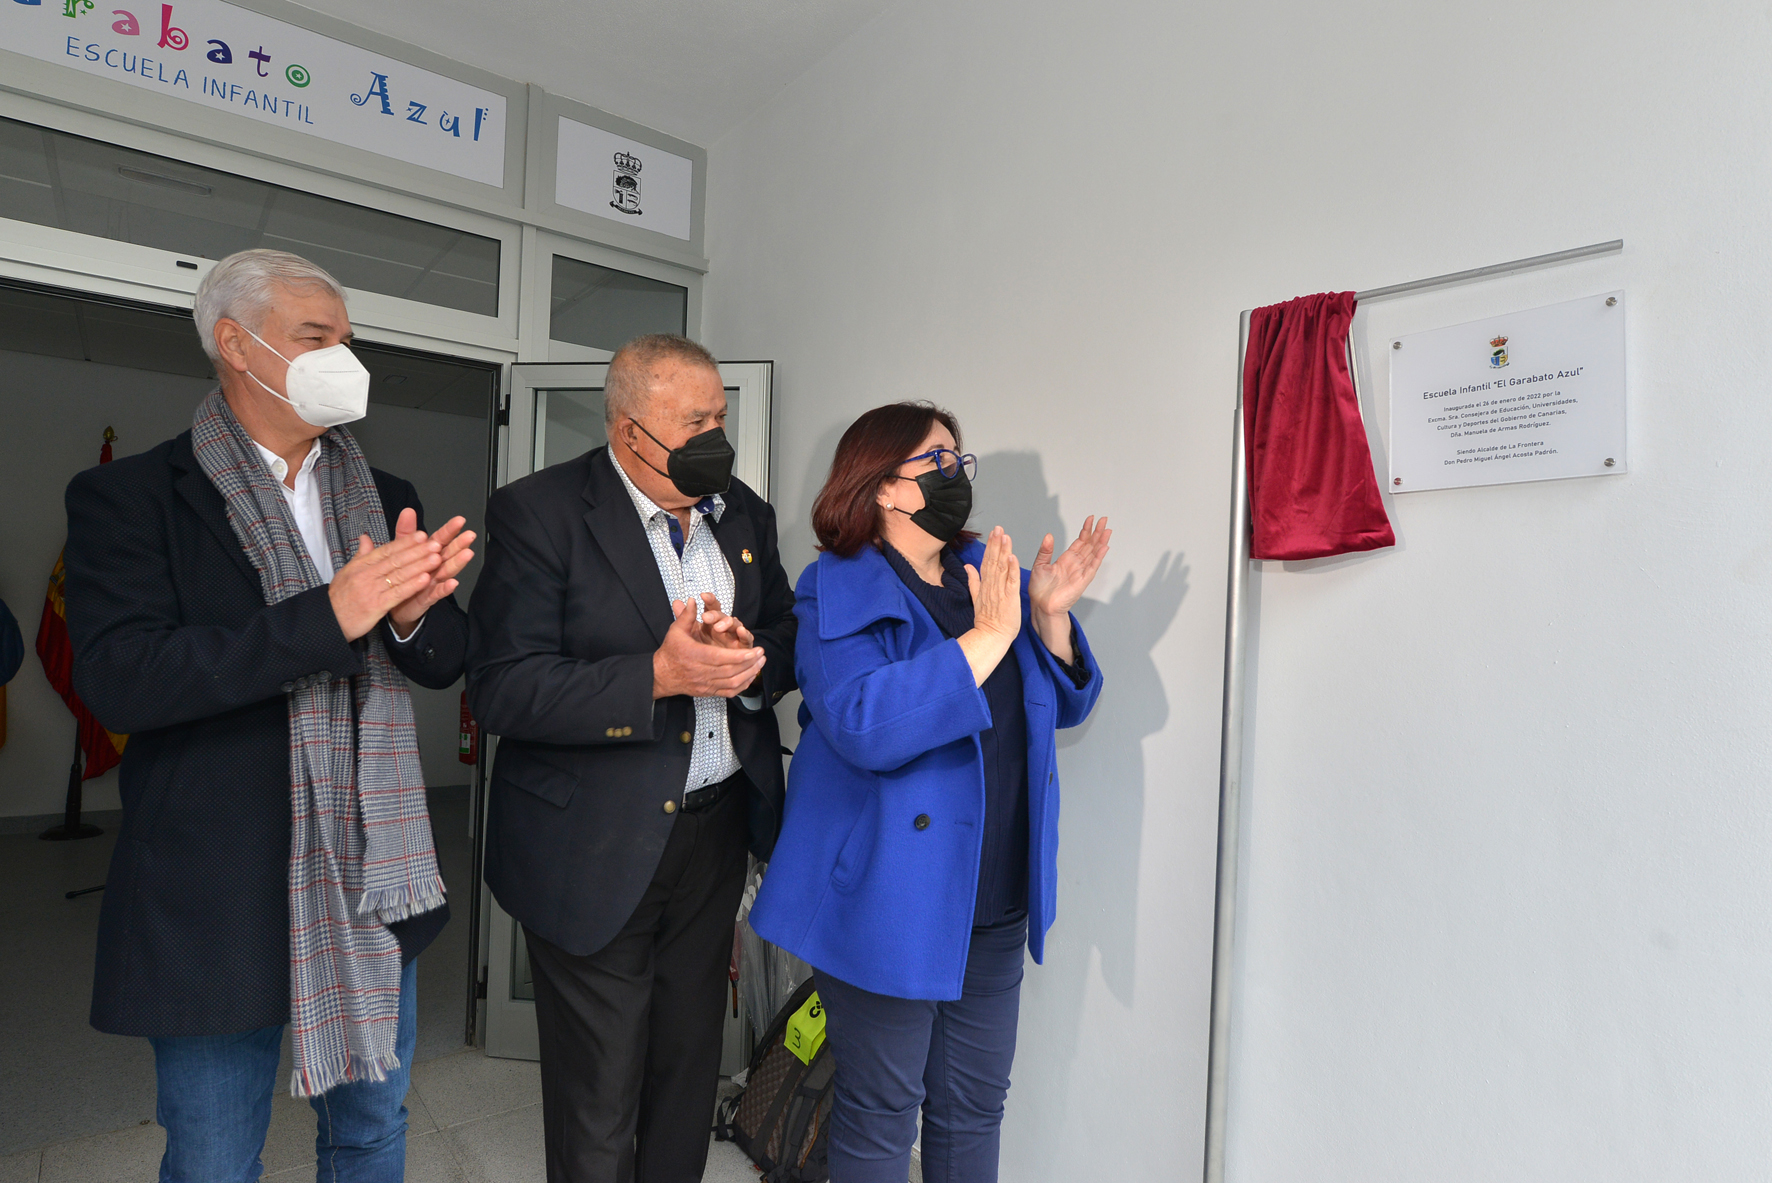 La Frontera inaugura la nueva escuela infantil “El Garabato Azul”